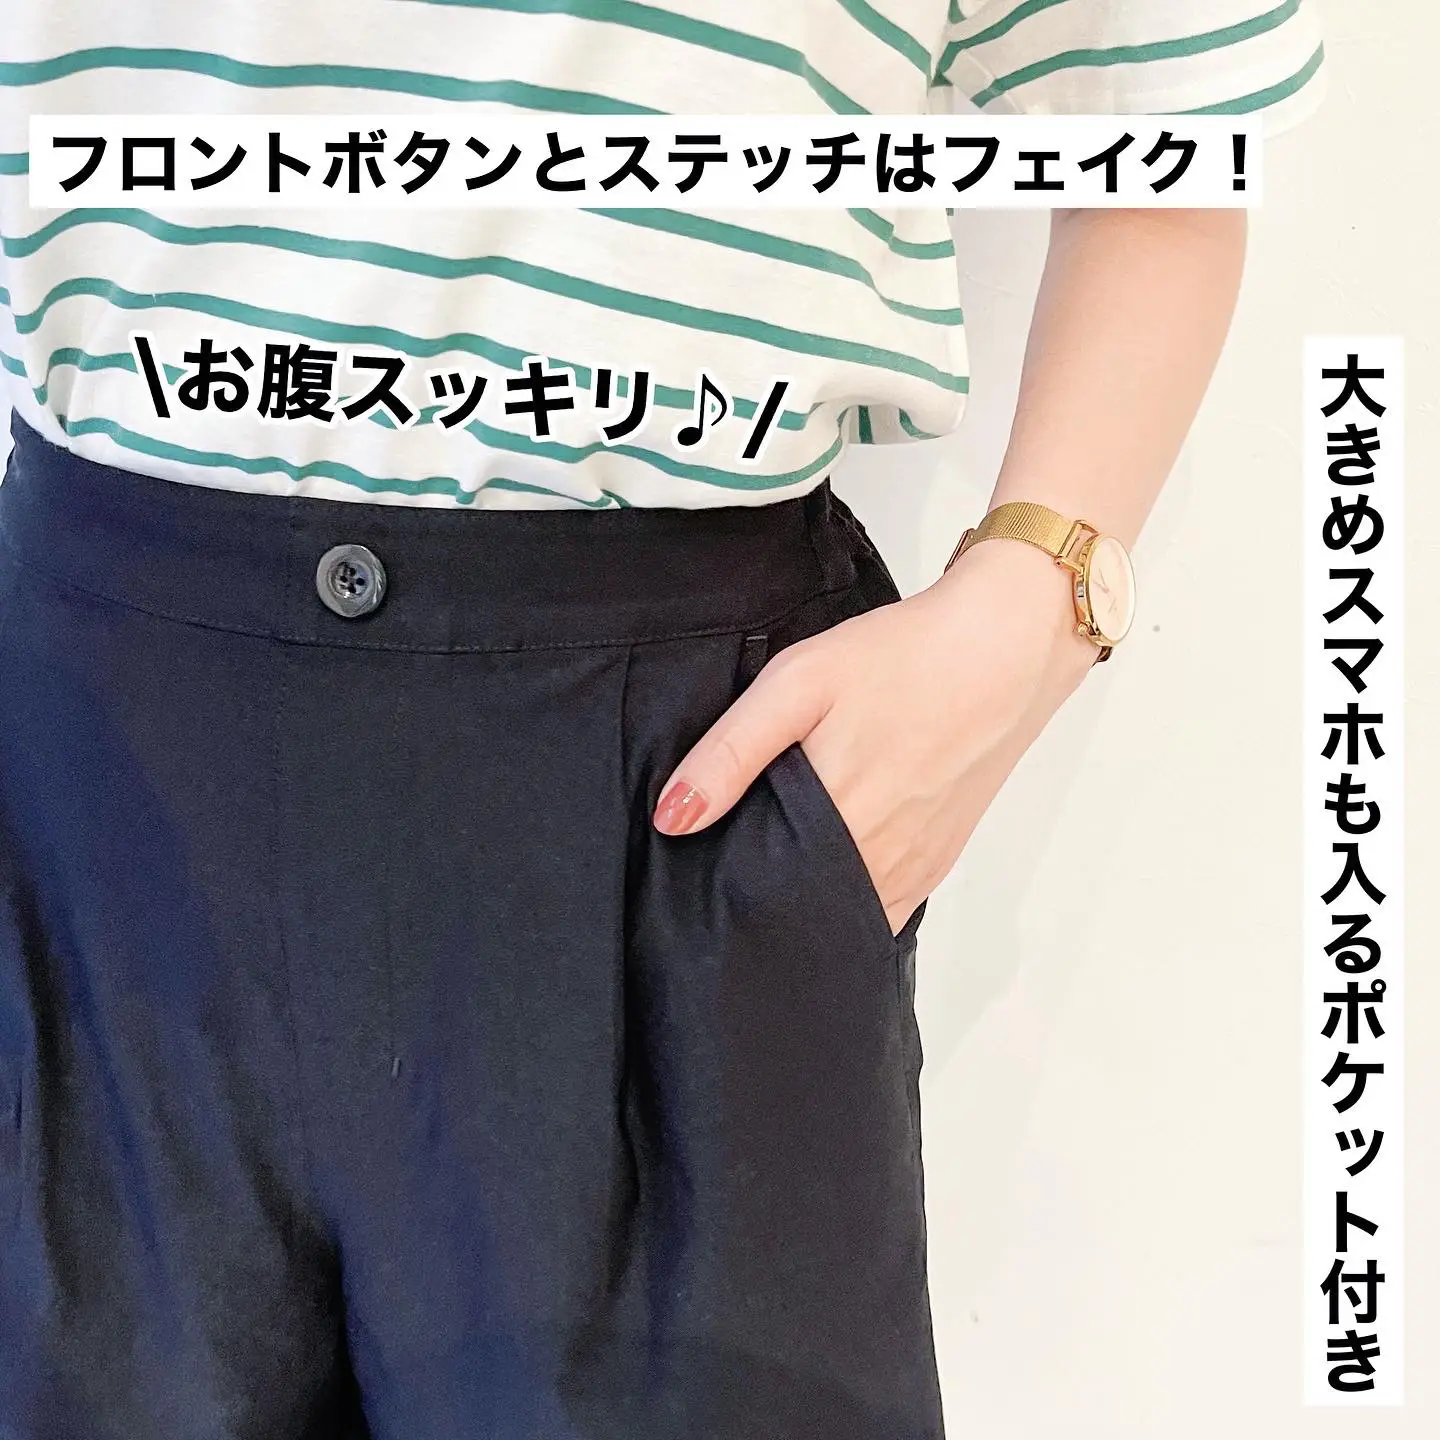 を安く買う方法 【春準備】 アナイ カーキ スカート ベルト付き 38